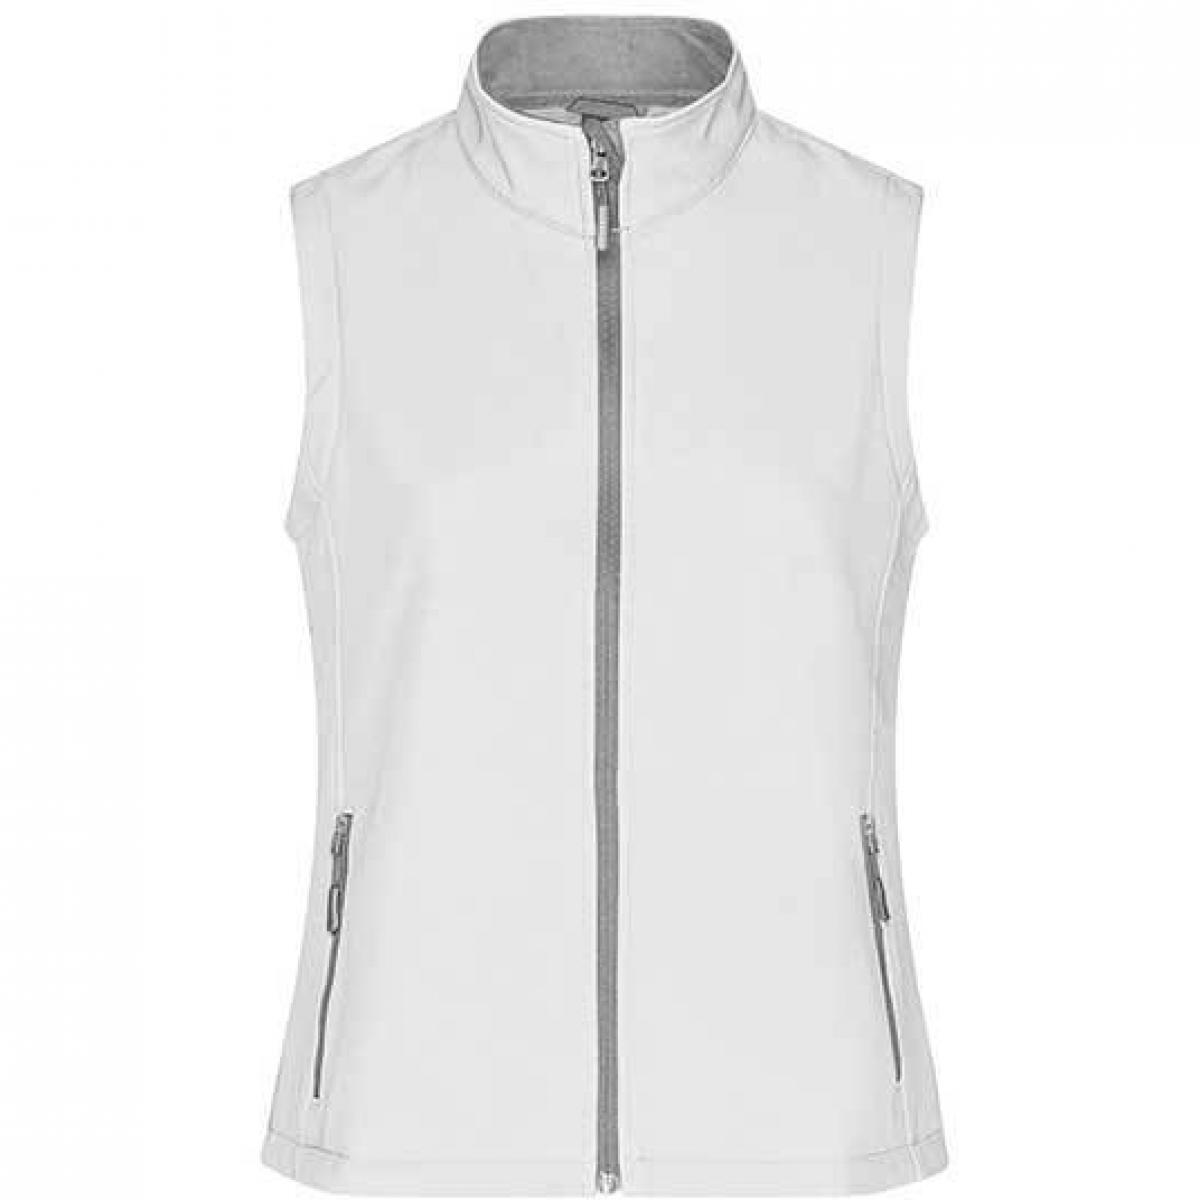 Hersteller: James+Nicholson Herstellernummer: JN1127 Artikelbezeichnung: Damen Promo Softshell Vest / Wasserabweisend, winddicht Farbe: White/White